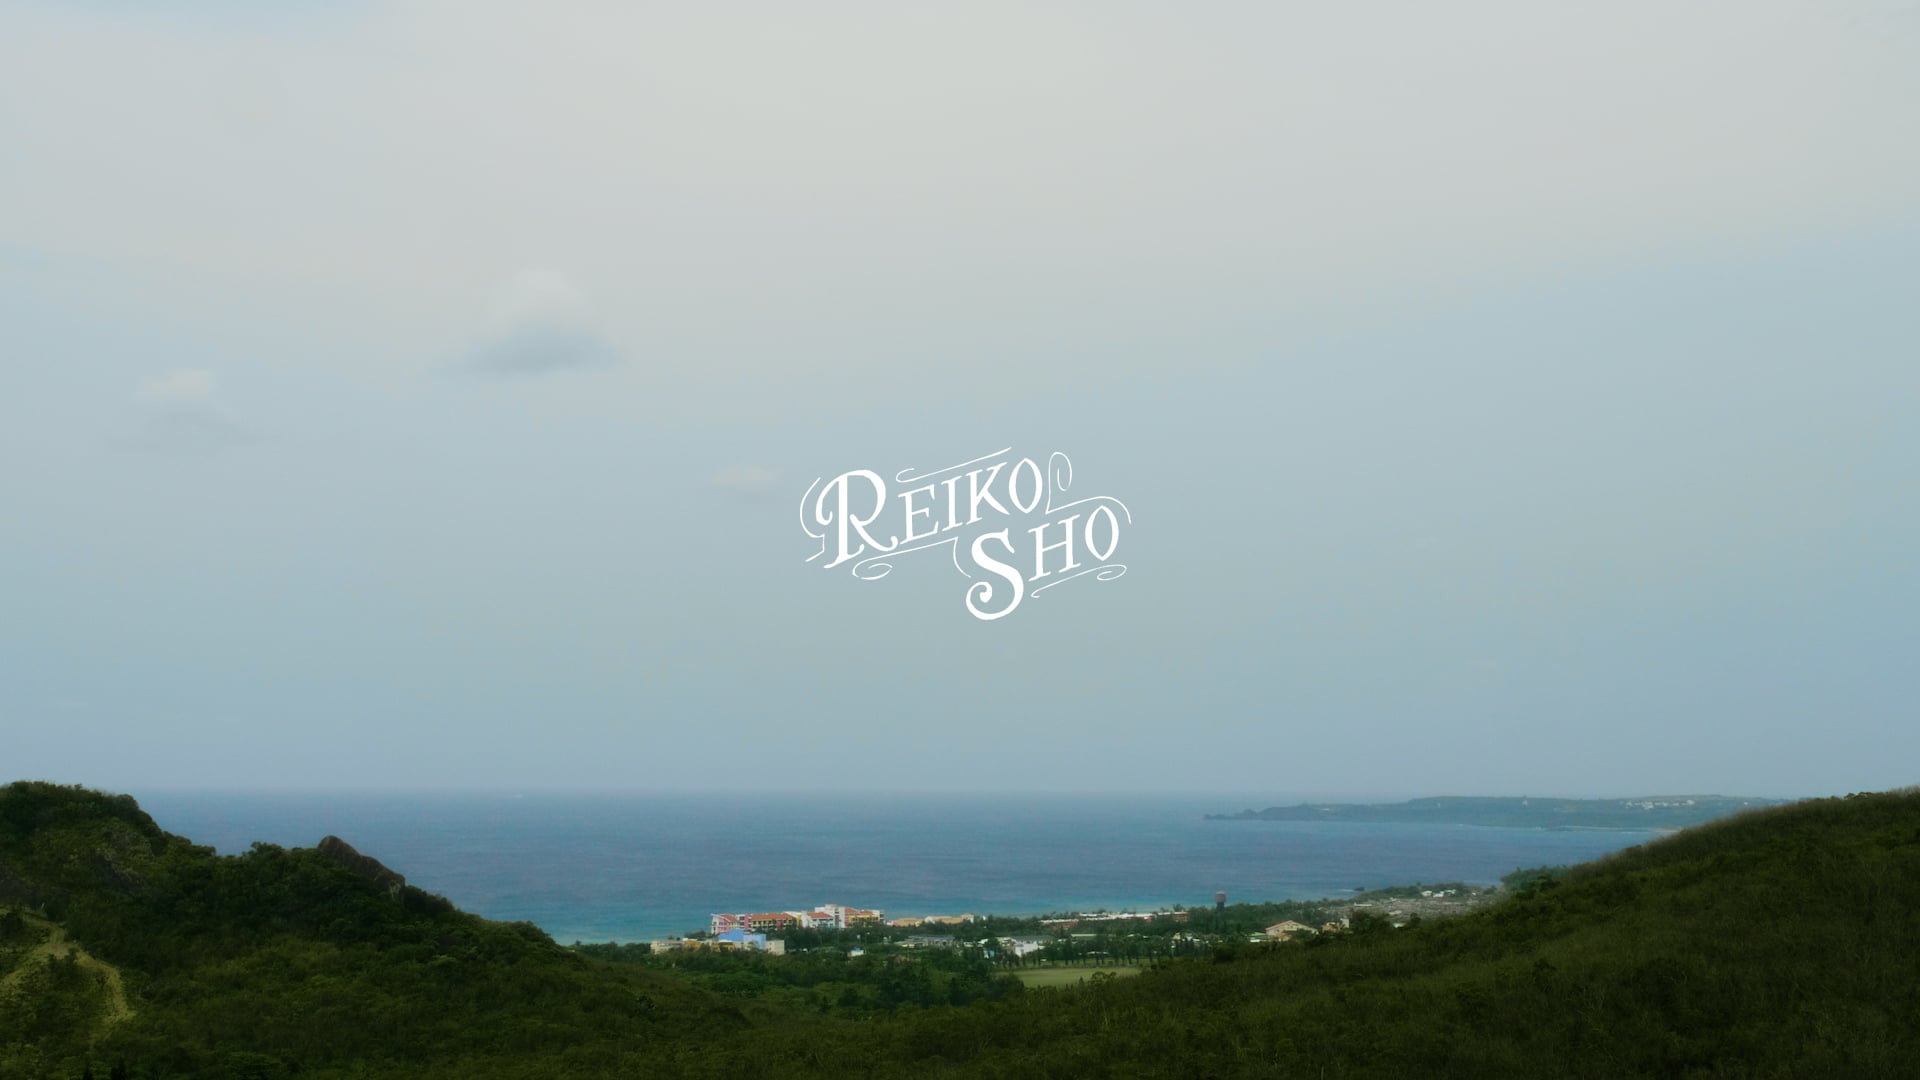 Reiko & Sho